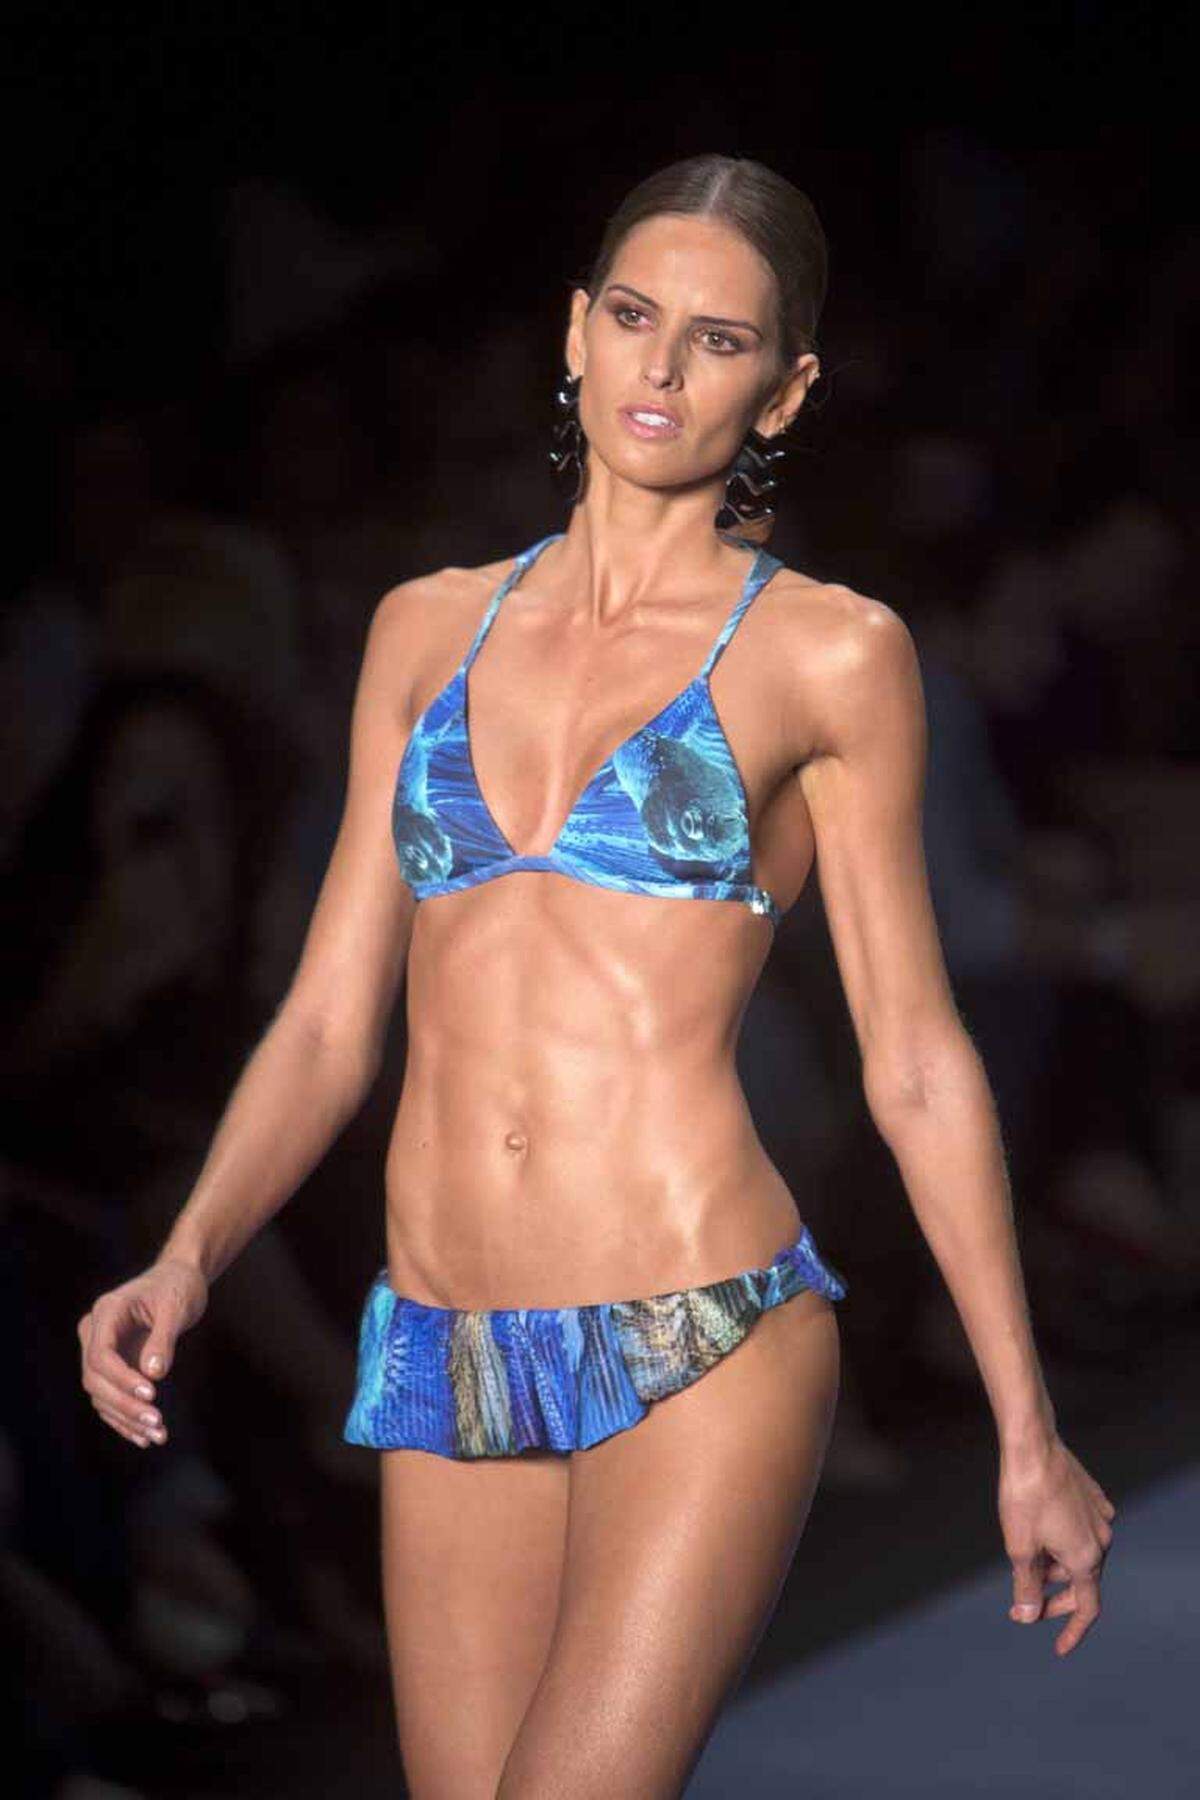 Wie die meisten brasilianischen Topmodels lief auch Izabel Goulart  schon für Victoria's Secret über den Catwalk. Die 29-Jährige modelt aber nicht nur Bikinis und Dessous, sondern auch High Fashion.